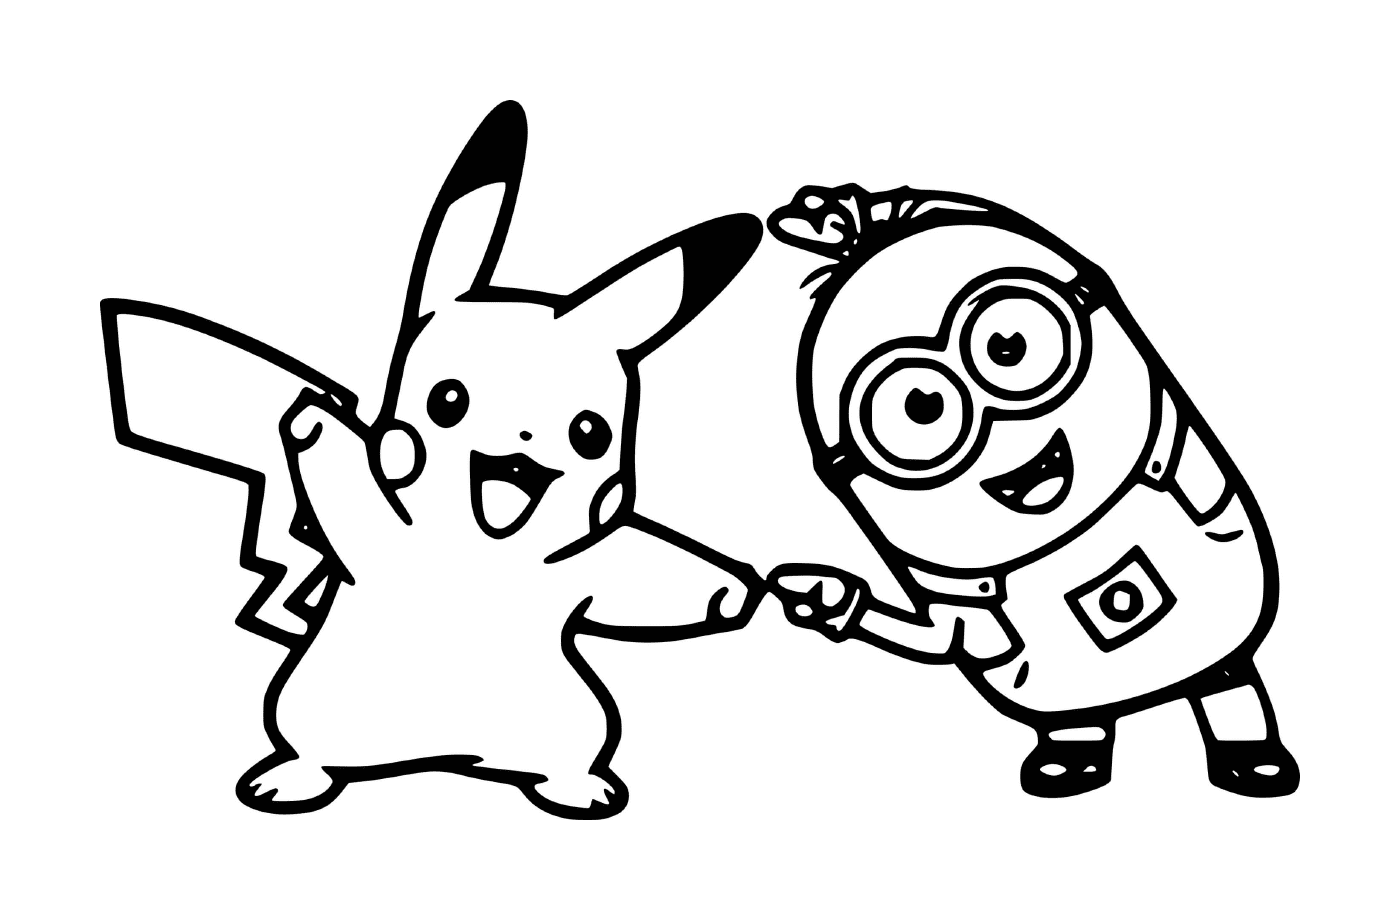  Minion e Pikachu juntos 